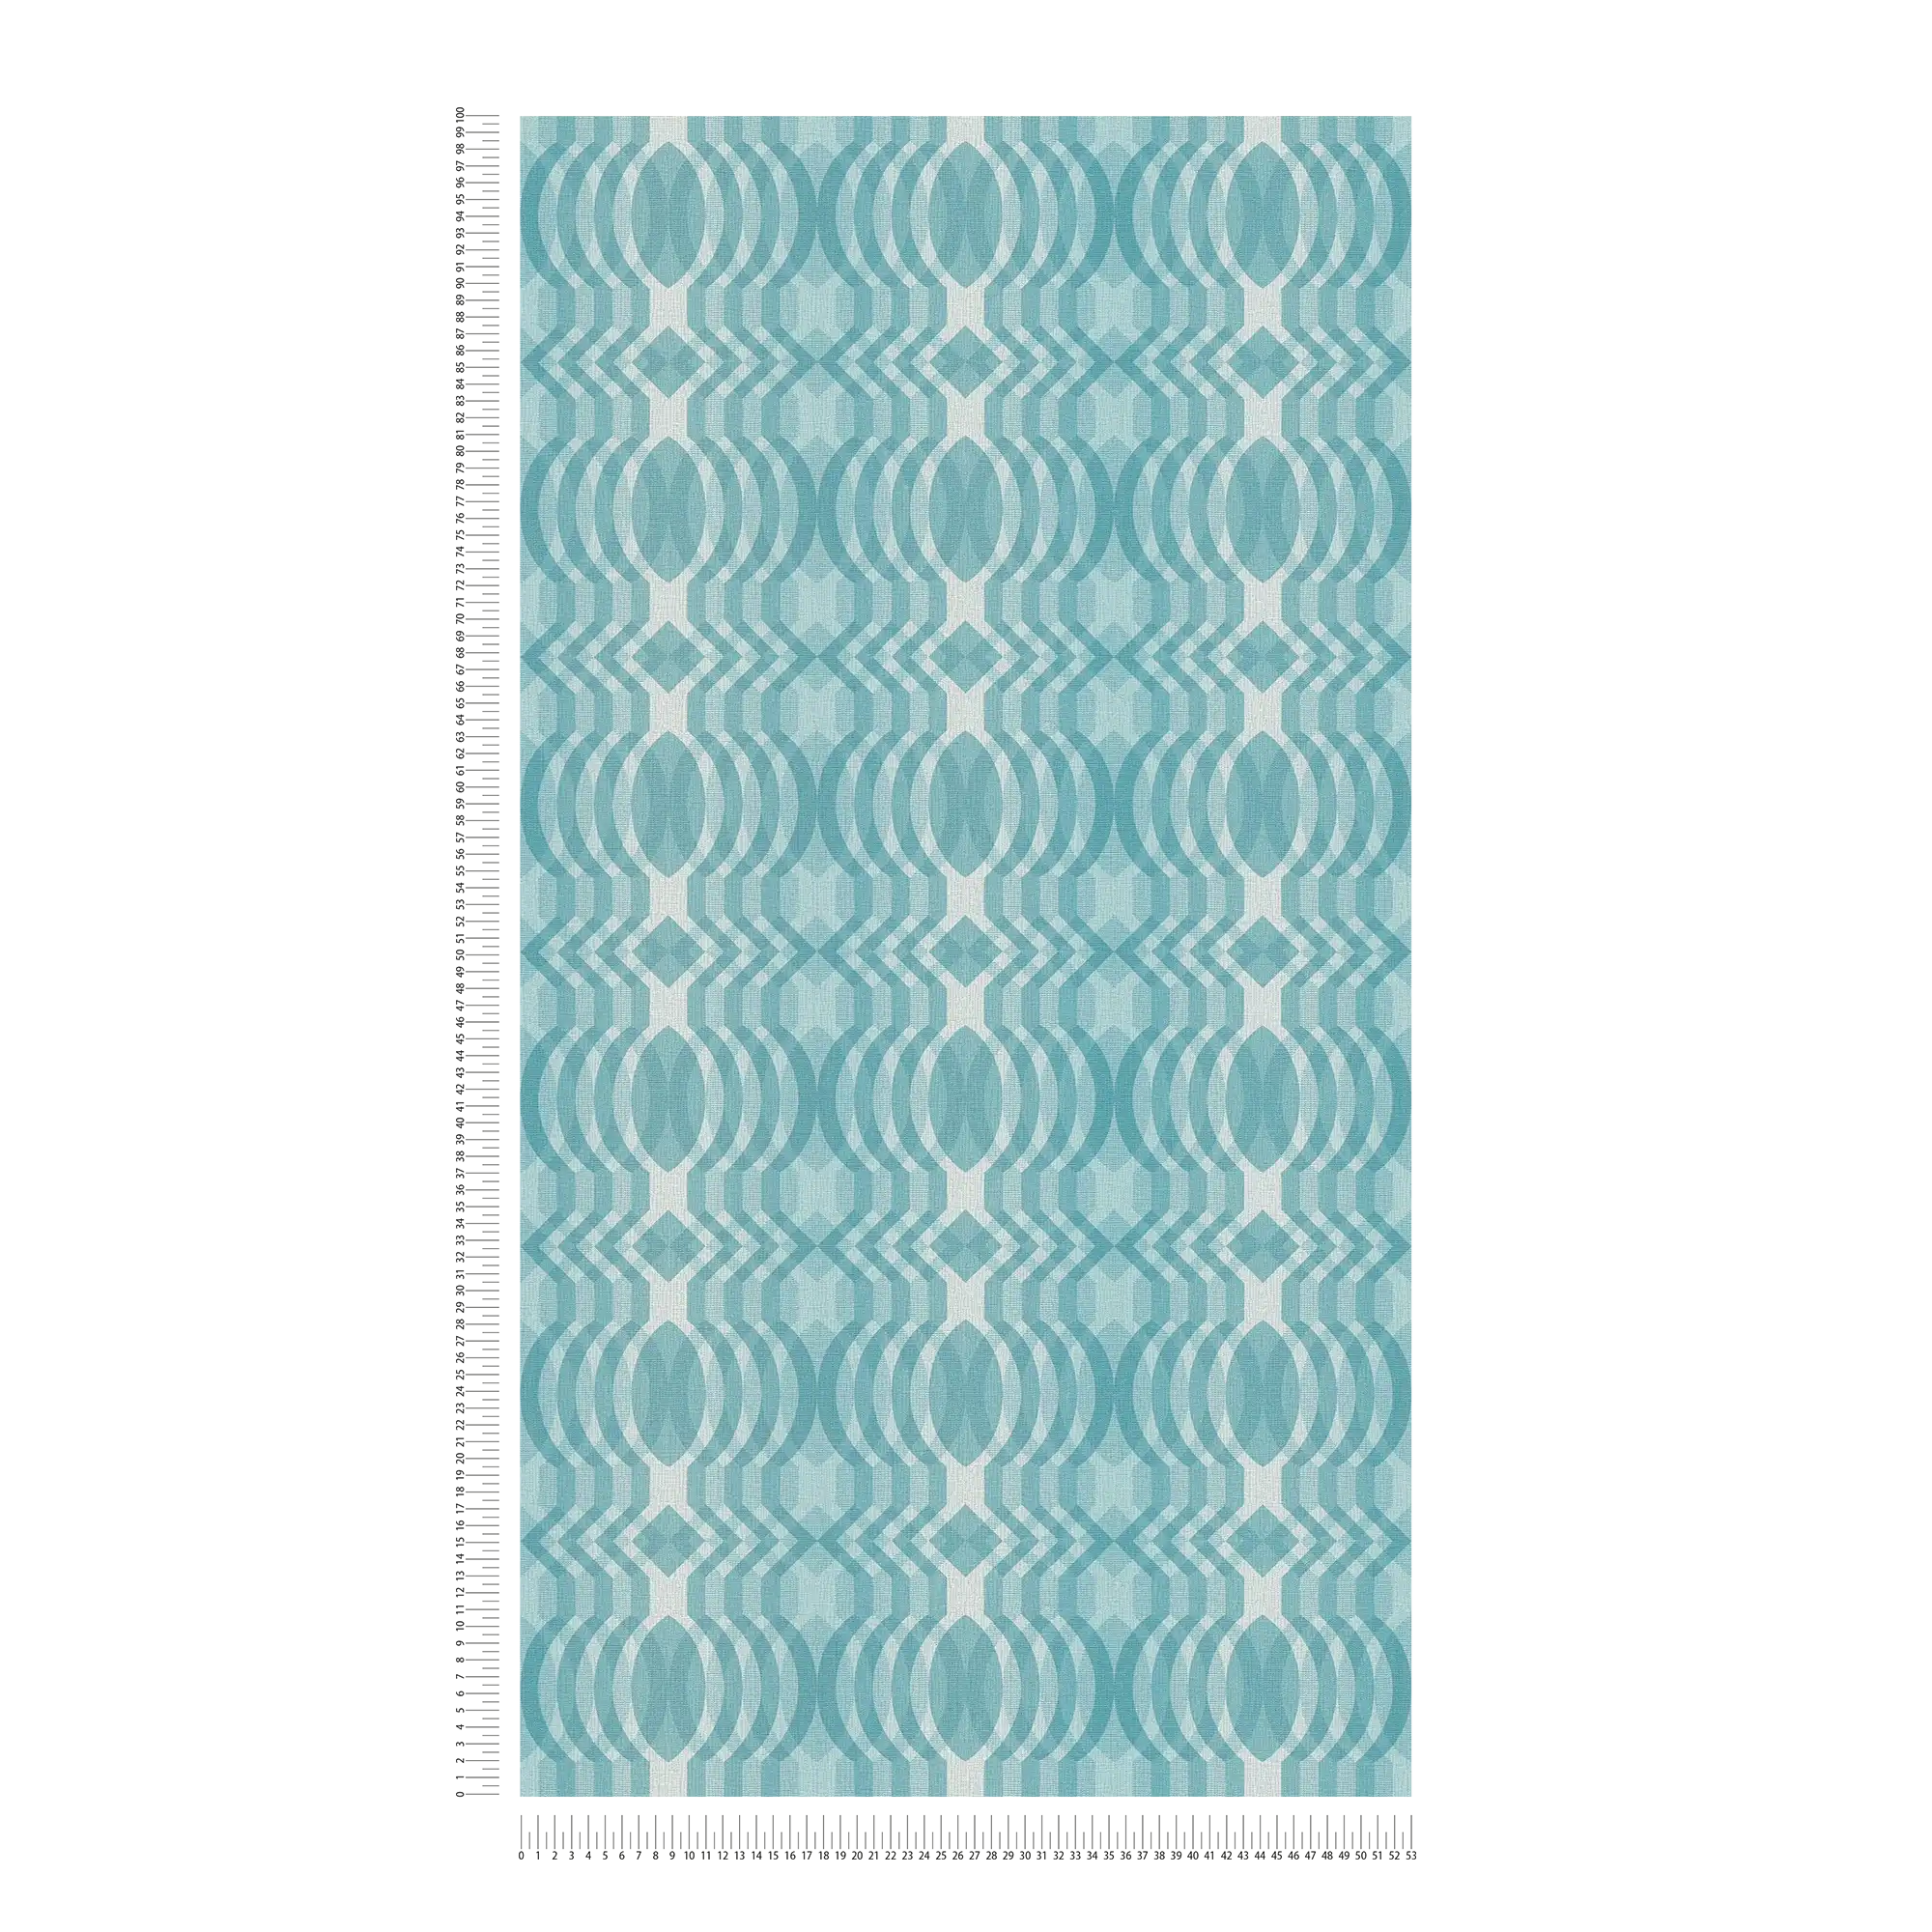             Retro behang met geometrisch patroon - blauw, crème, wit
        